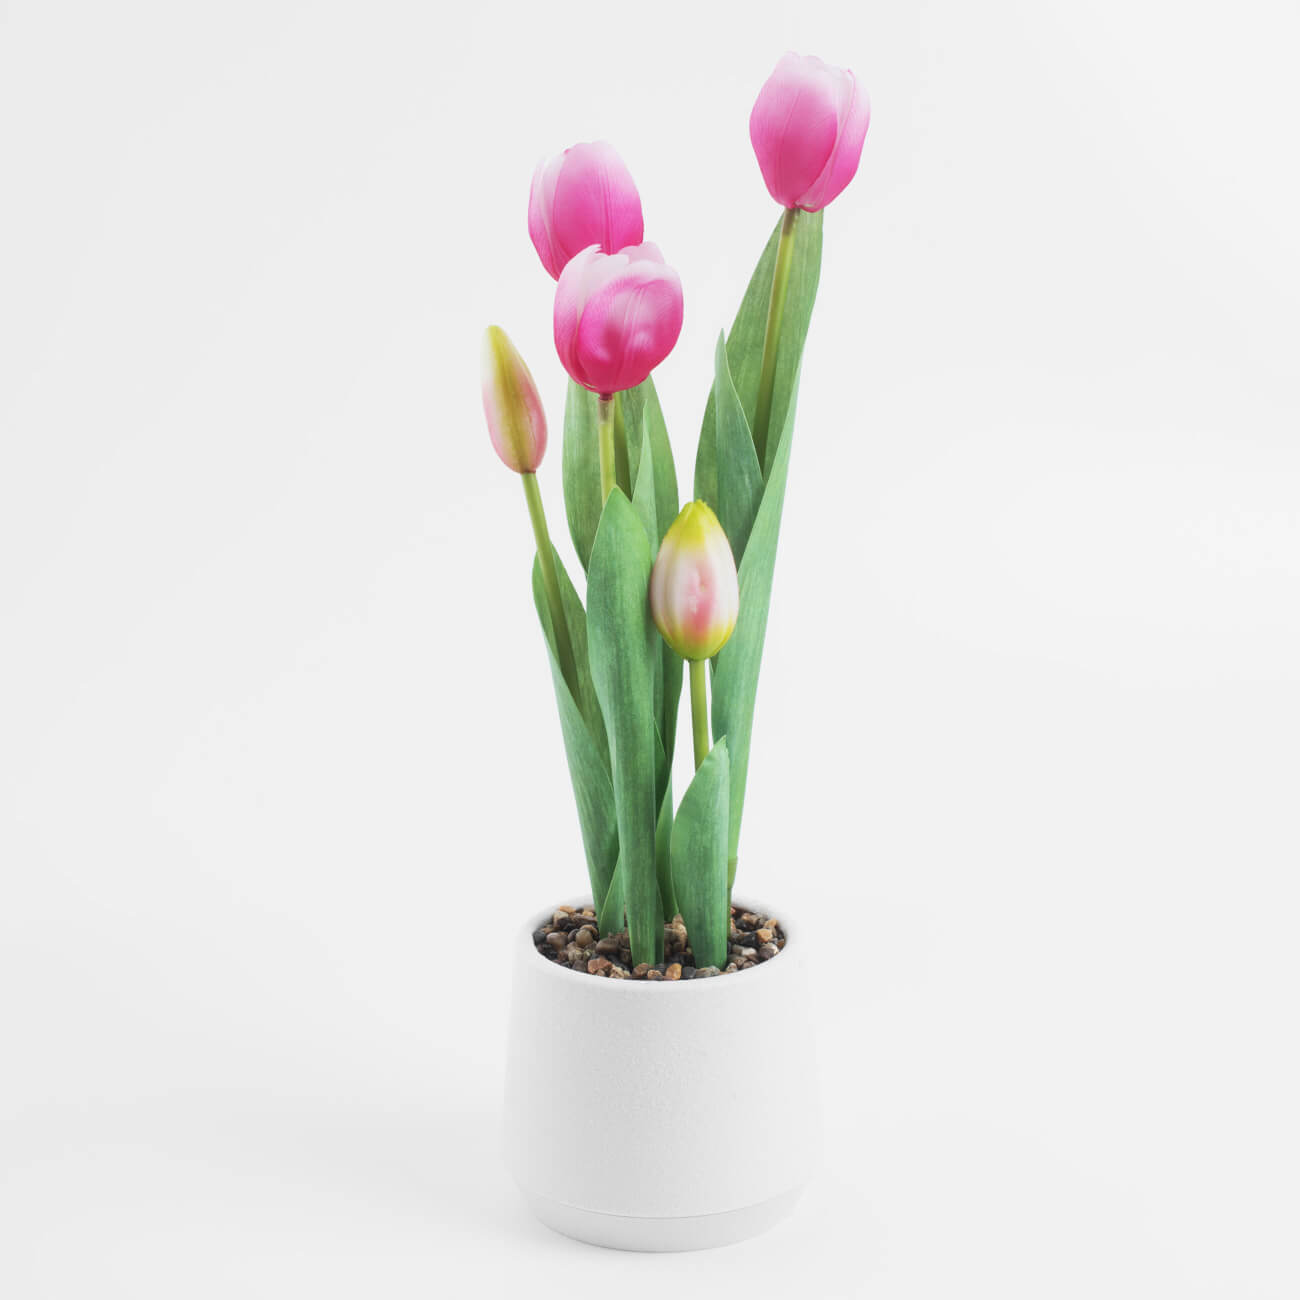 Растение искусственное, 36 см, в горшке, полиэстер/пластик, Розовые тюльпаны, Tulip garden растение искусственное аквариумное светящееся 5 см зелёное